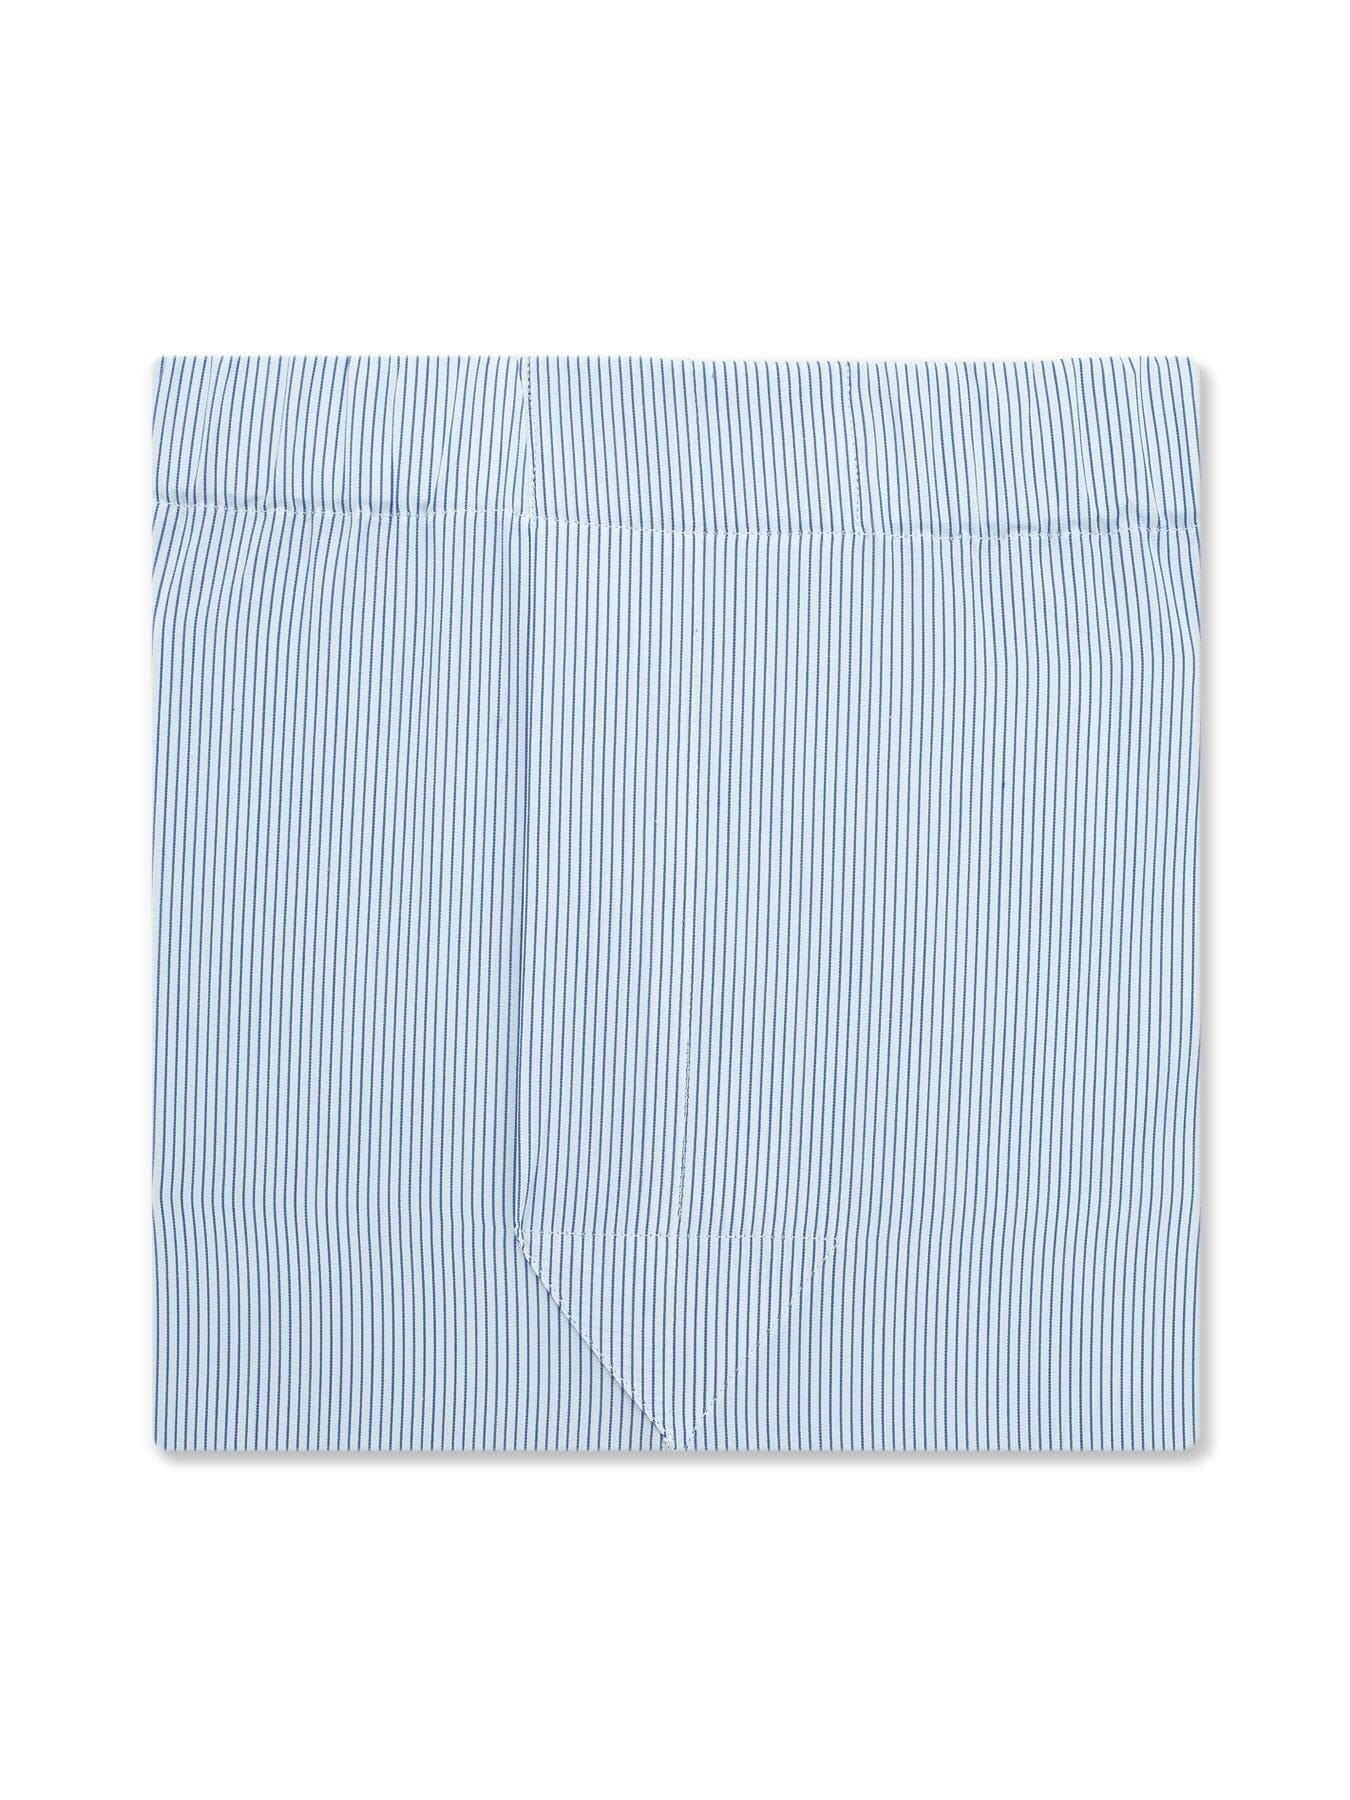 Classic Boxer Shorts in a Mid Blue & White Fine Pinstripe Poplin Cotton